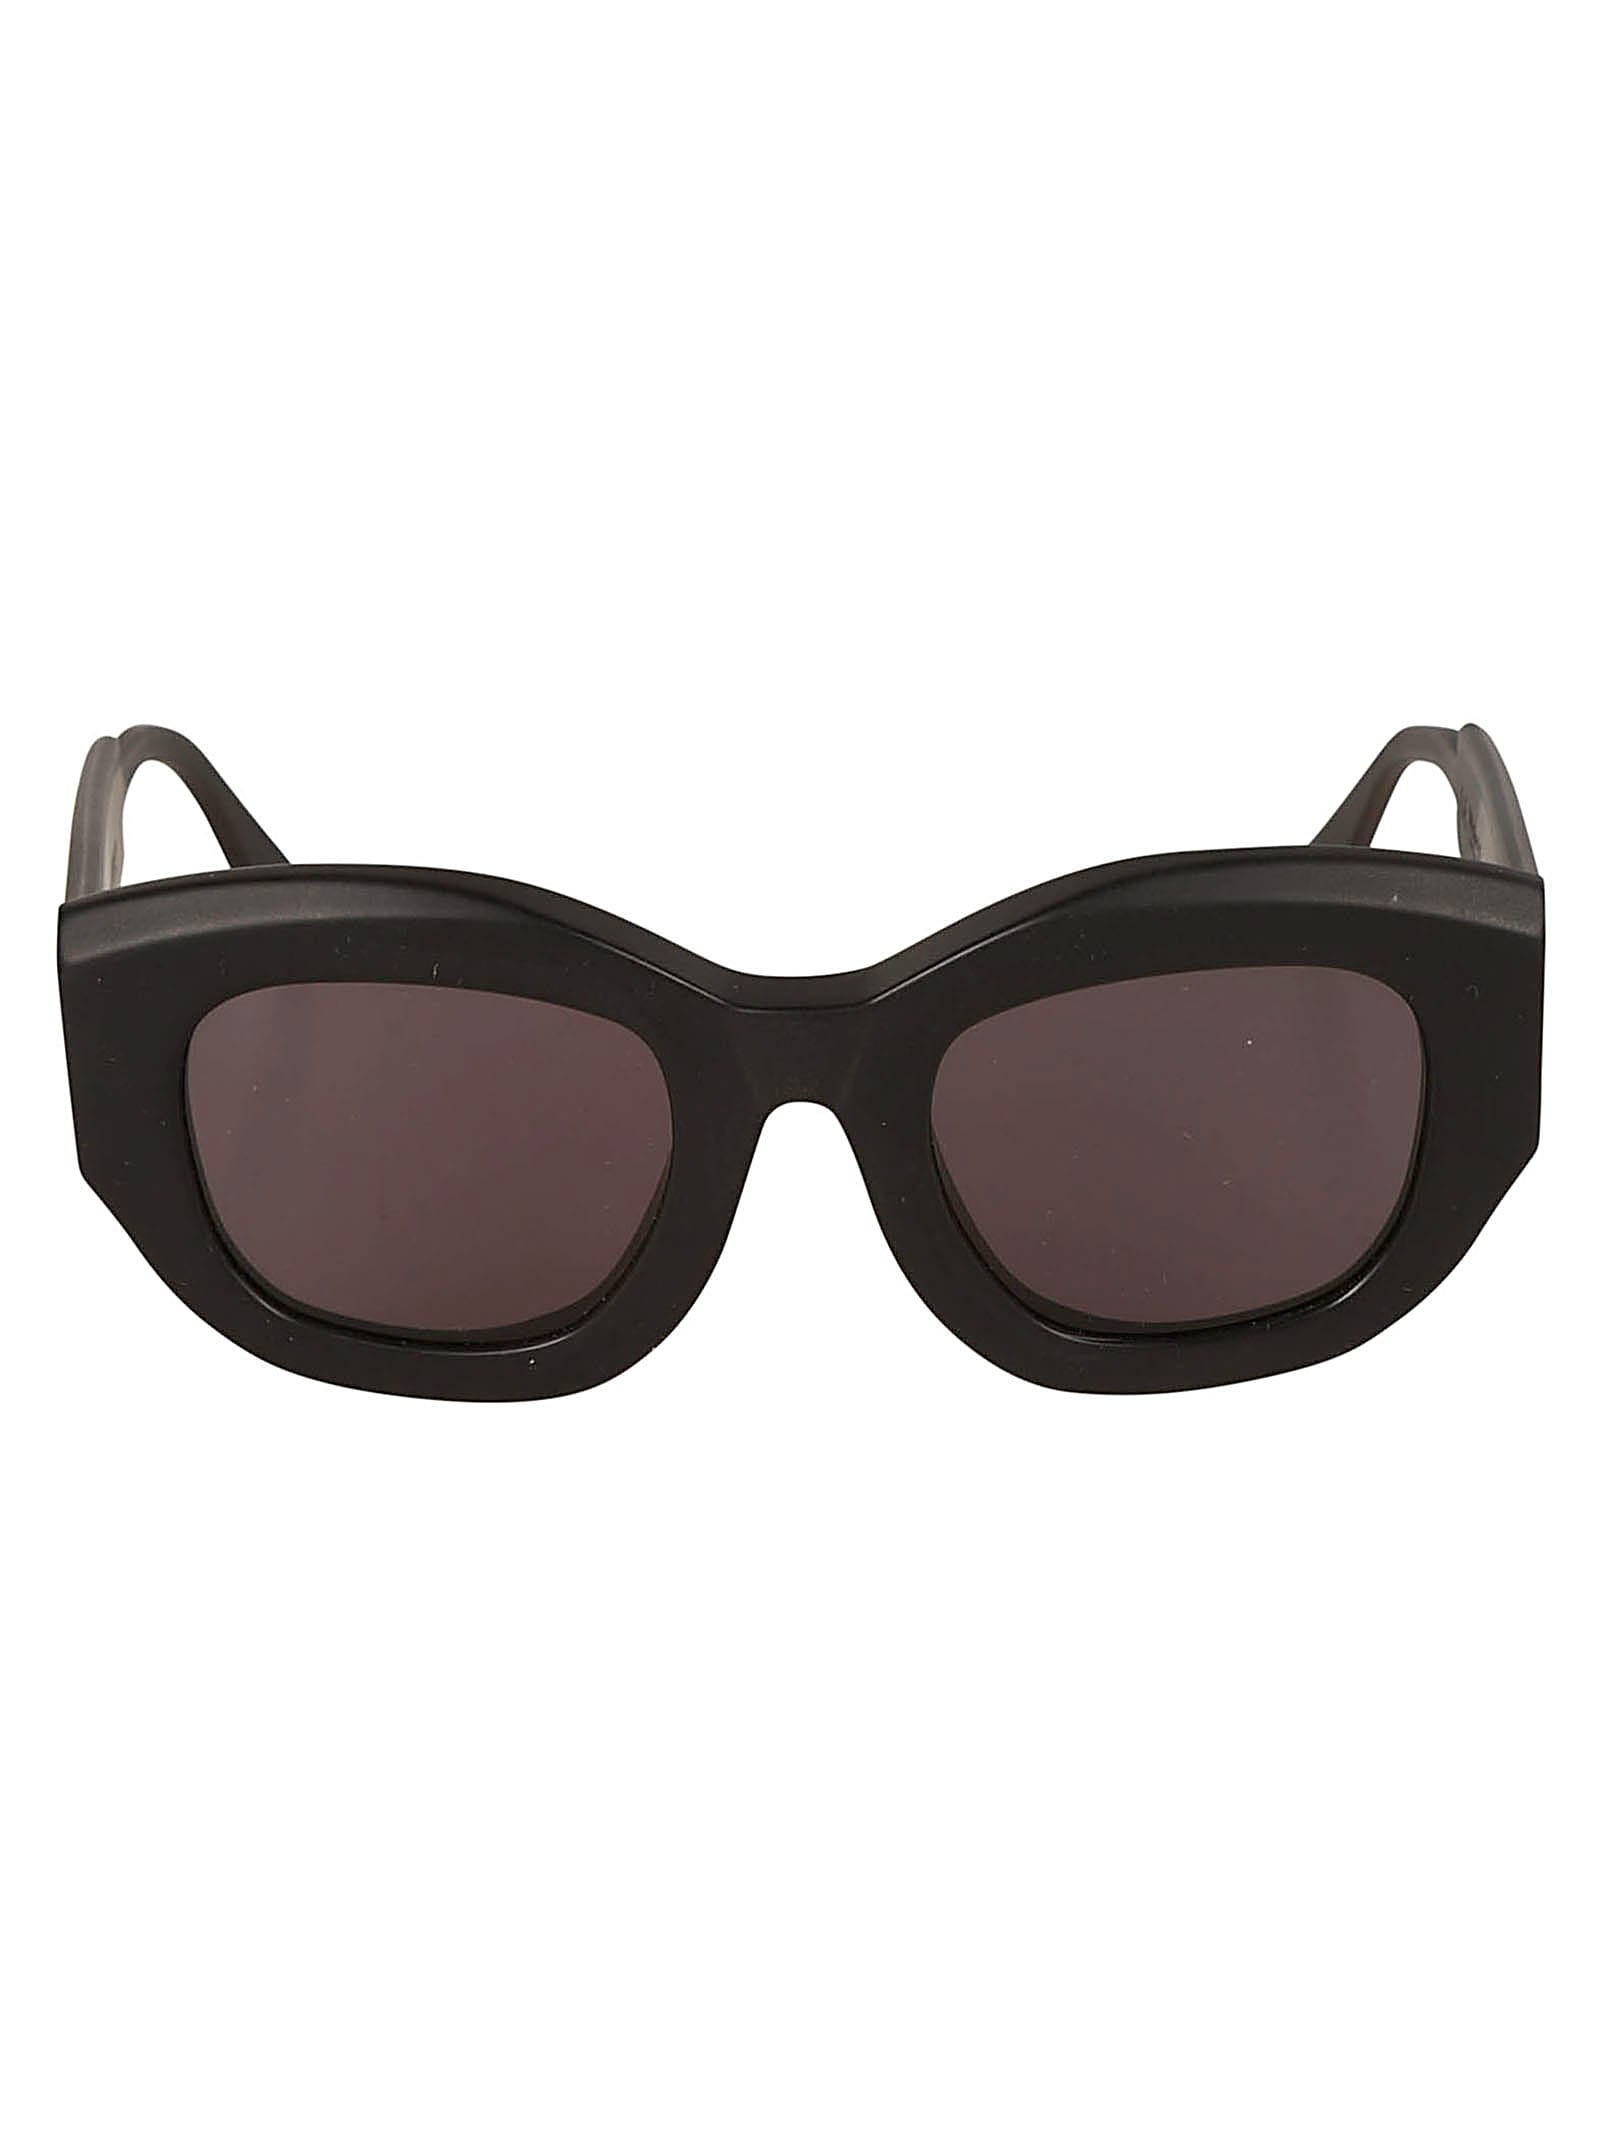 Kuboraum B5 Sunglasses Sunglasses In Black